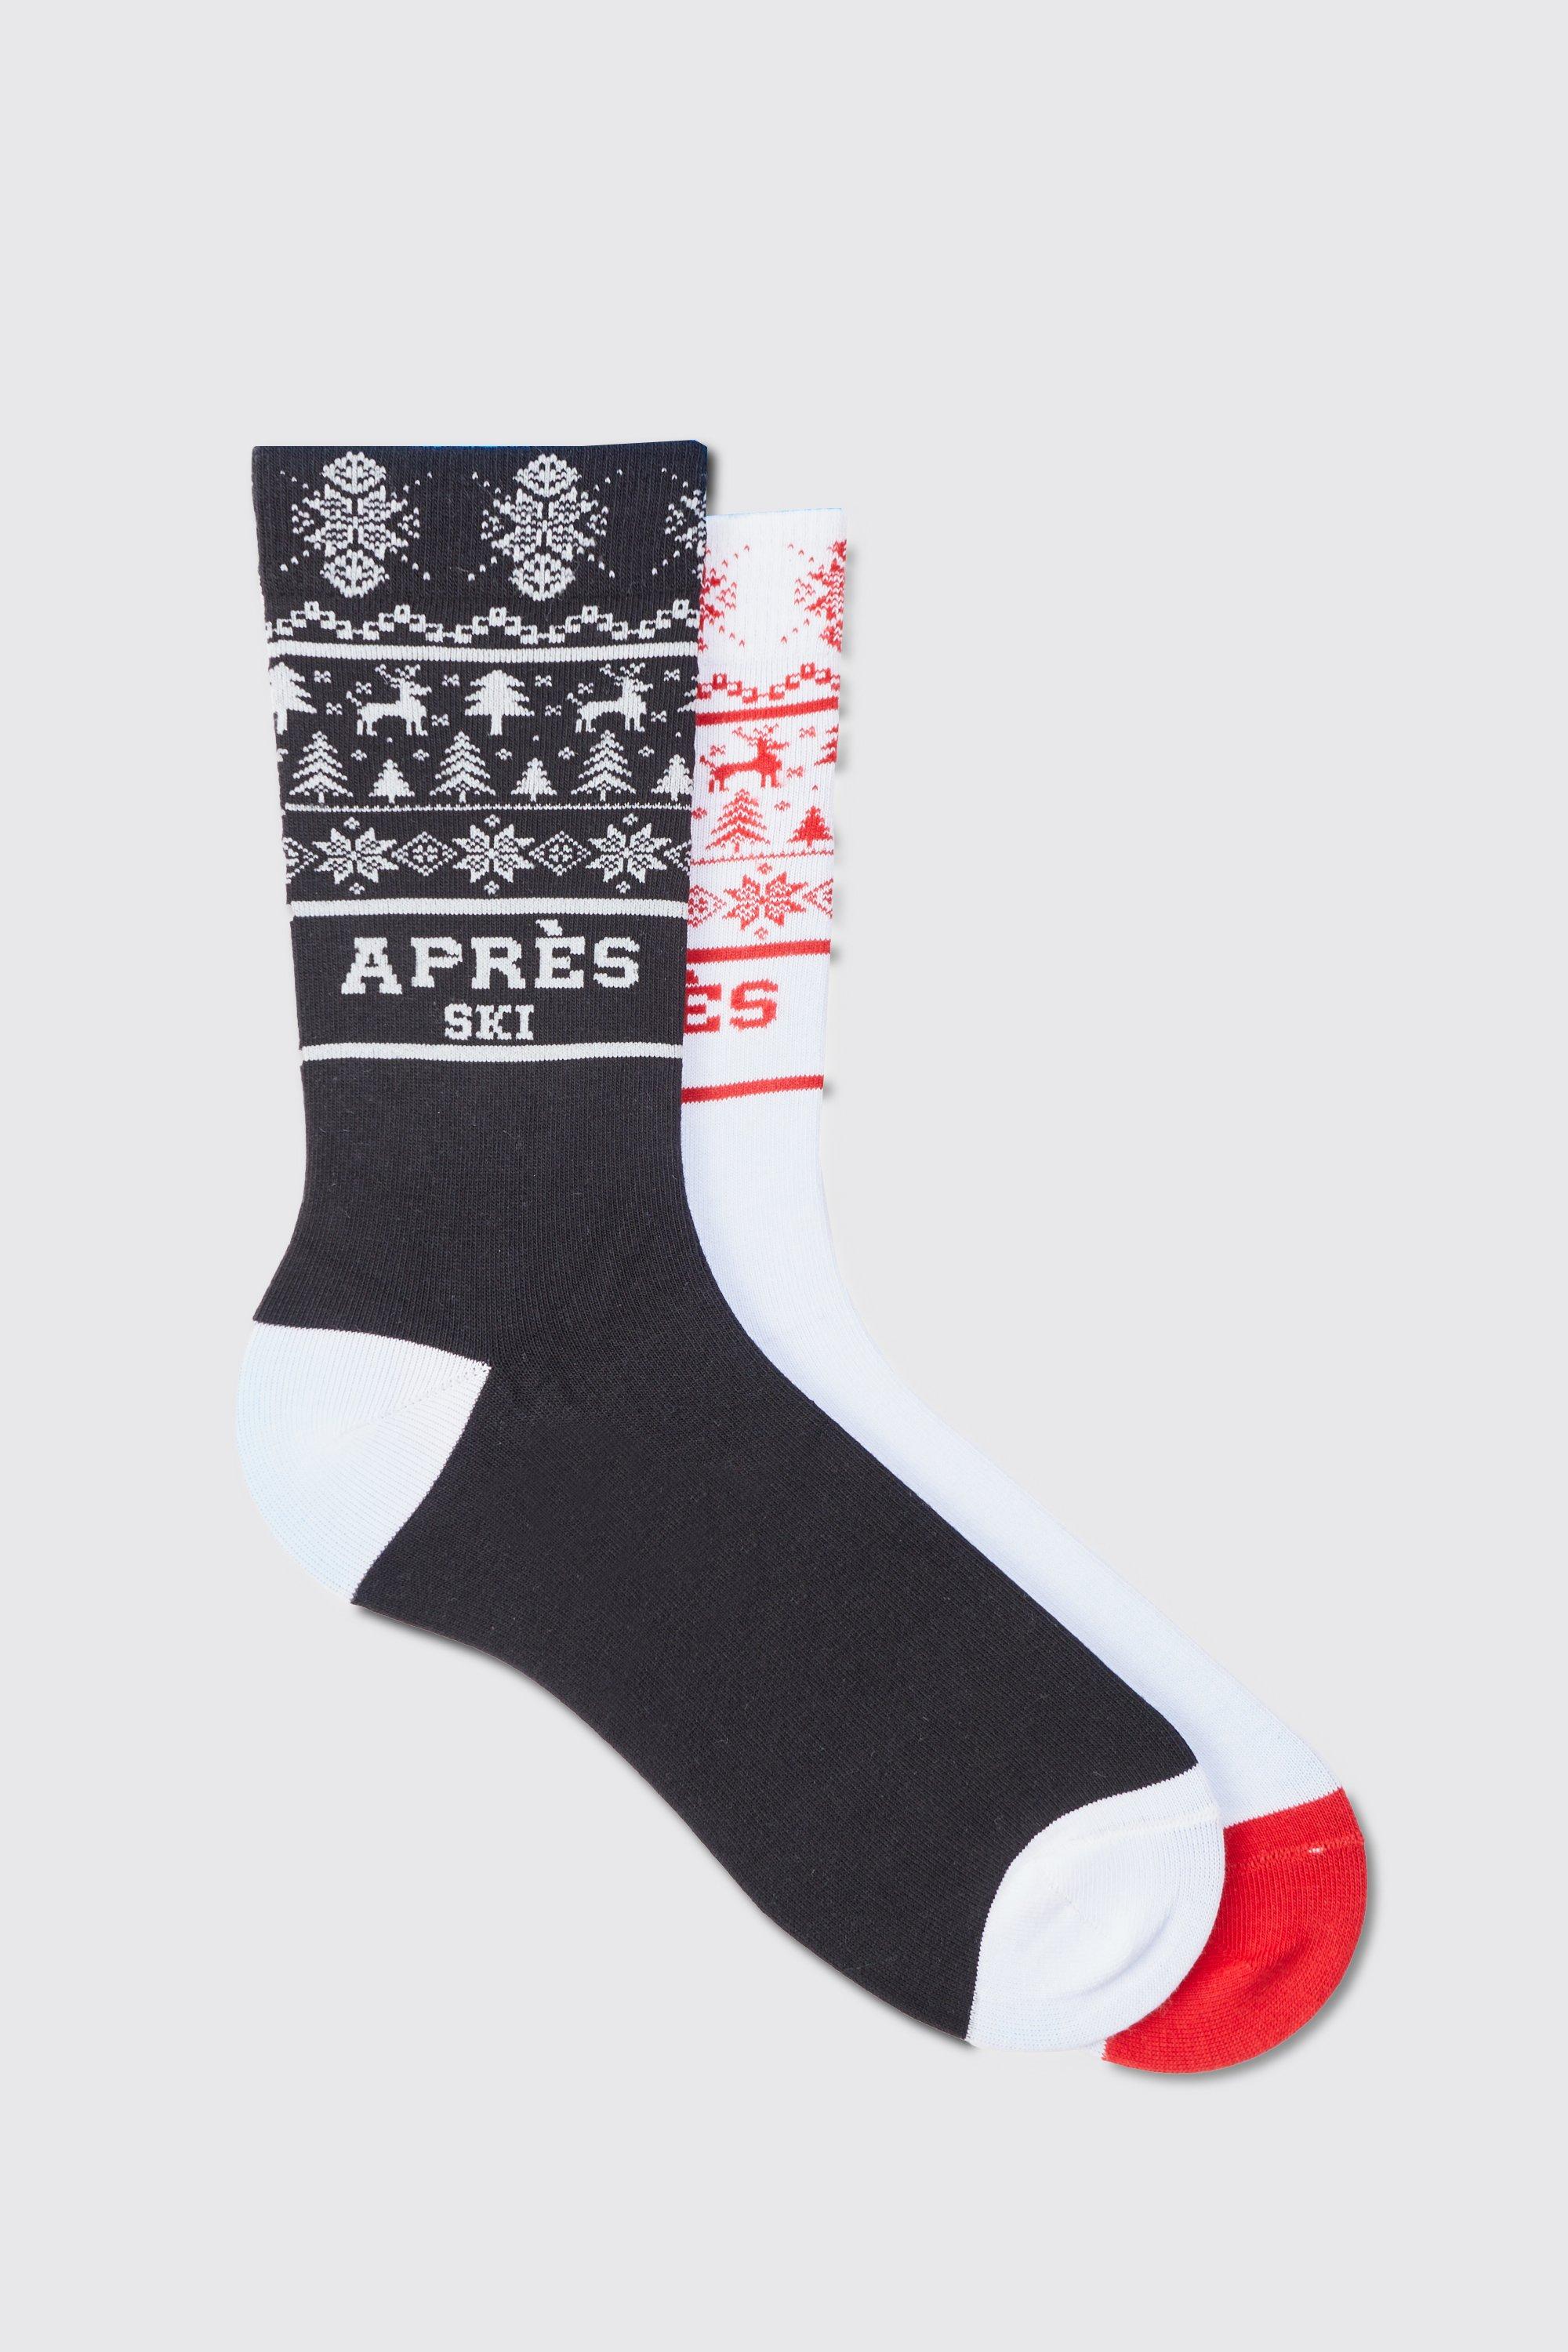 men's 2 pack apres ski socks in giftbox - multi - one size, multi